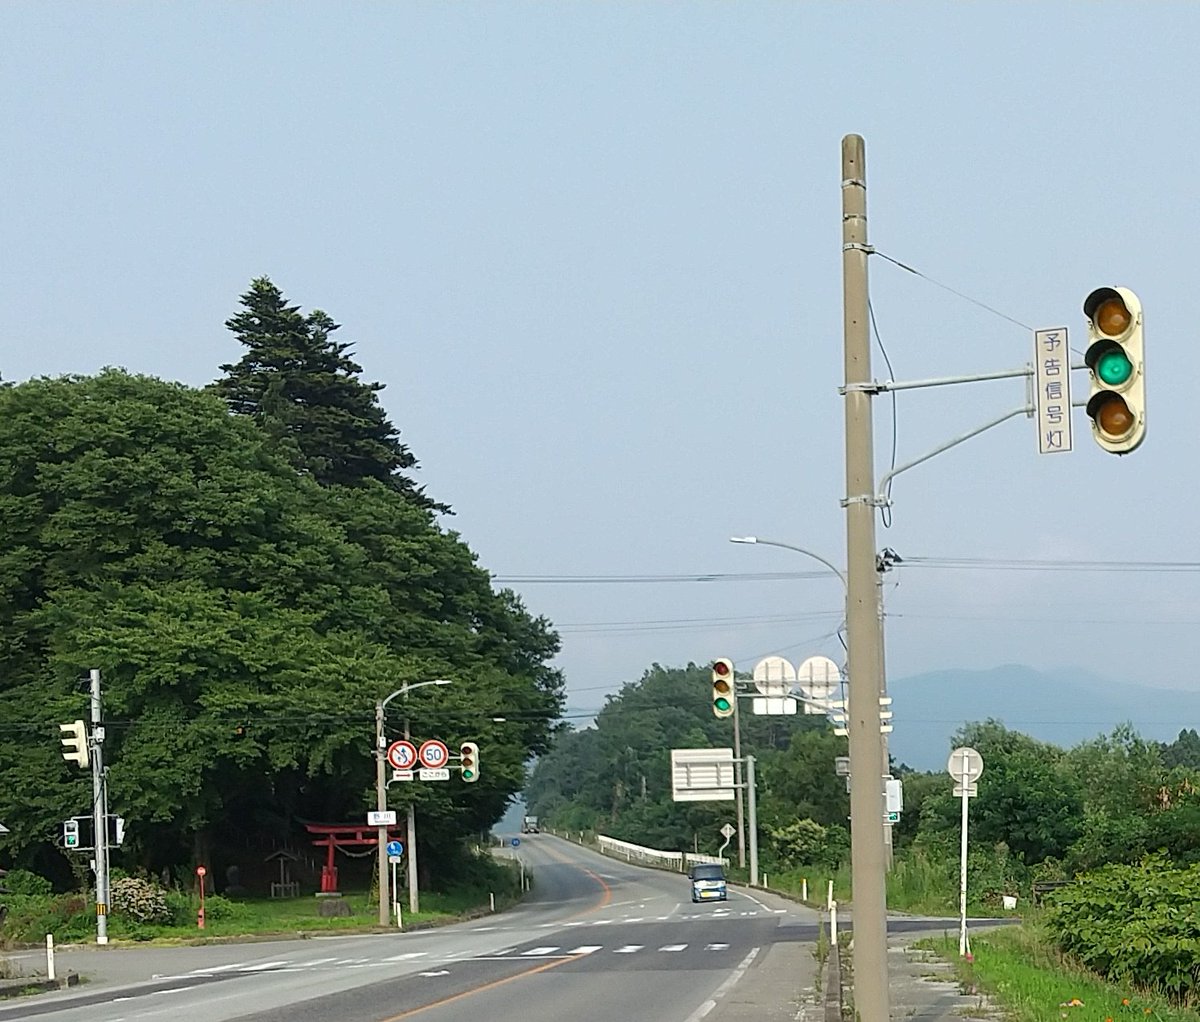 日本信号ファン 信号機 鉄道垢 速報 山形県東根市大字野川にある松下製樹脂型灯器縦型ygy予告信号は今日 確認したところ 現存していました ケータイカメラで撮影